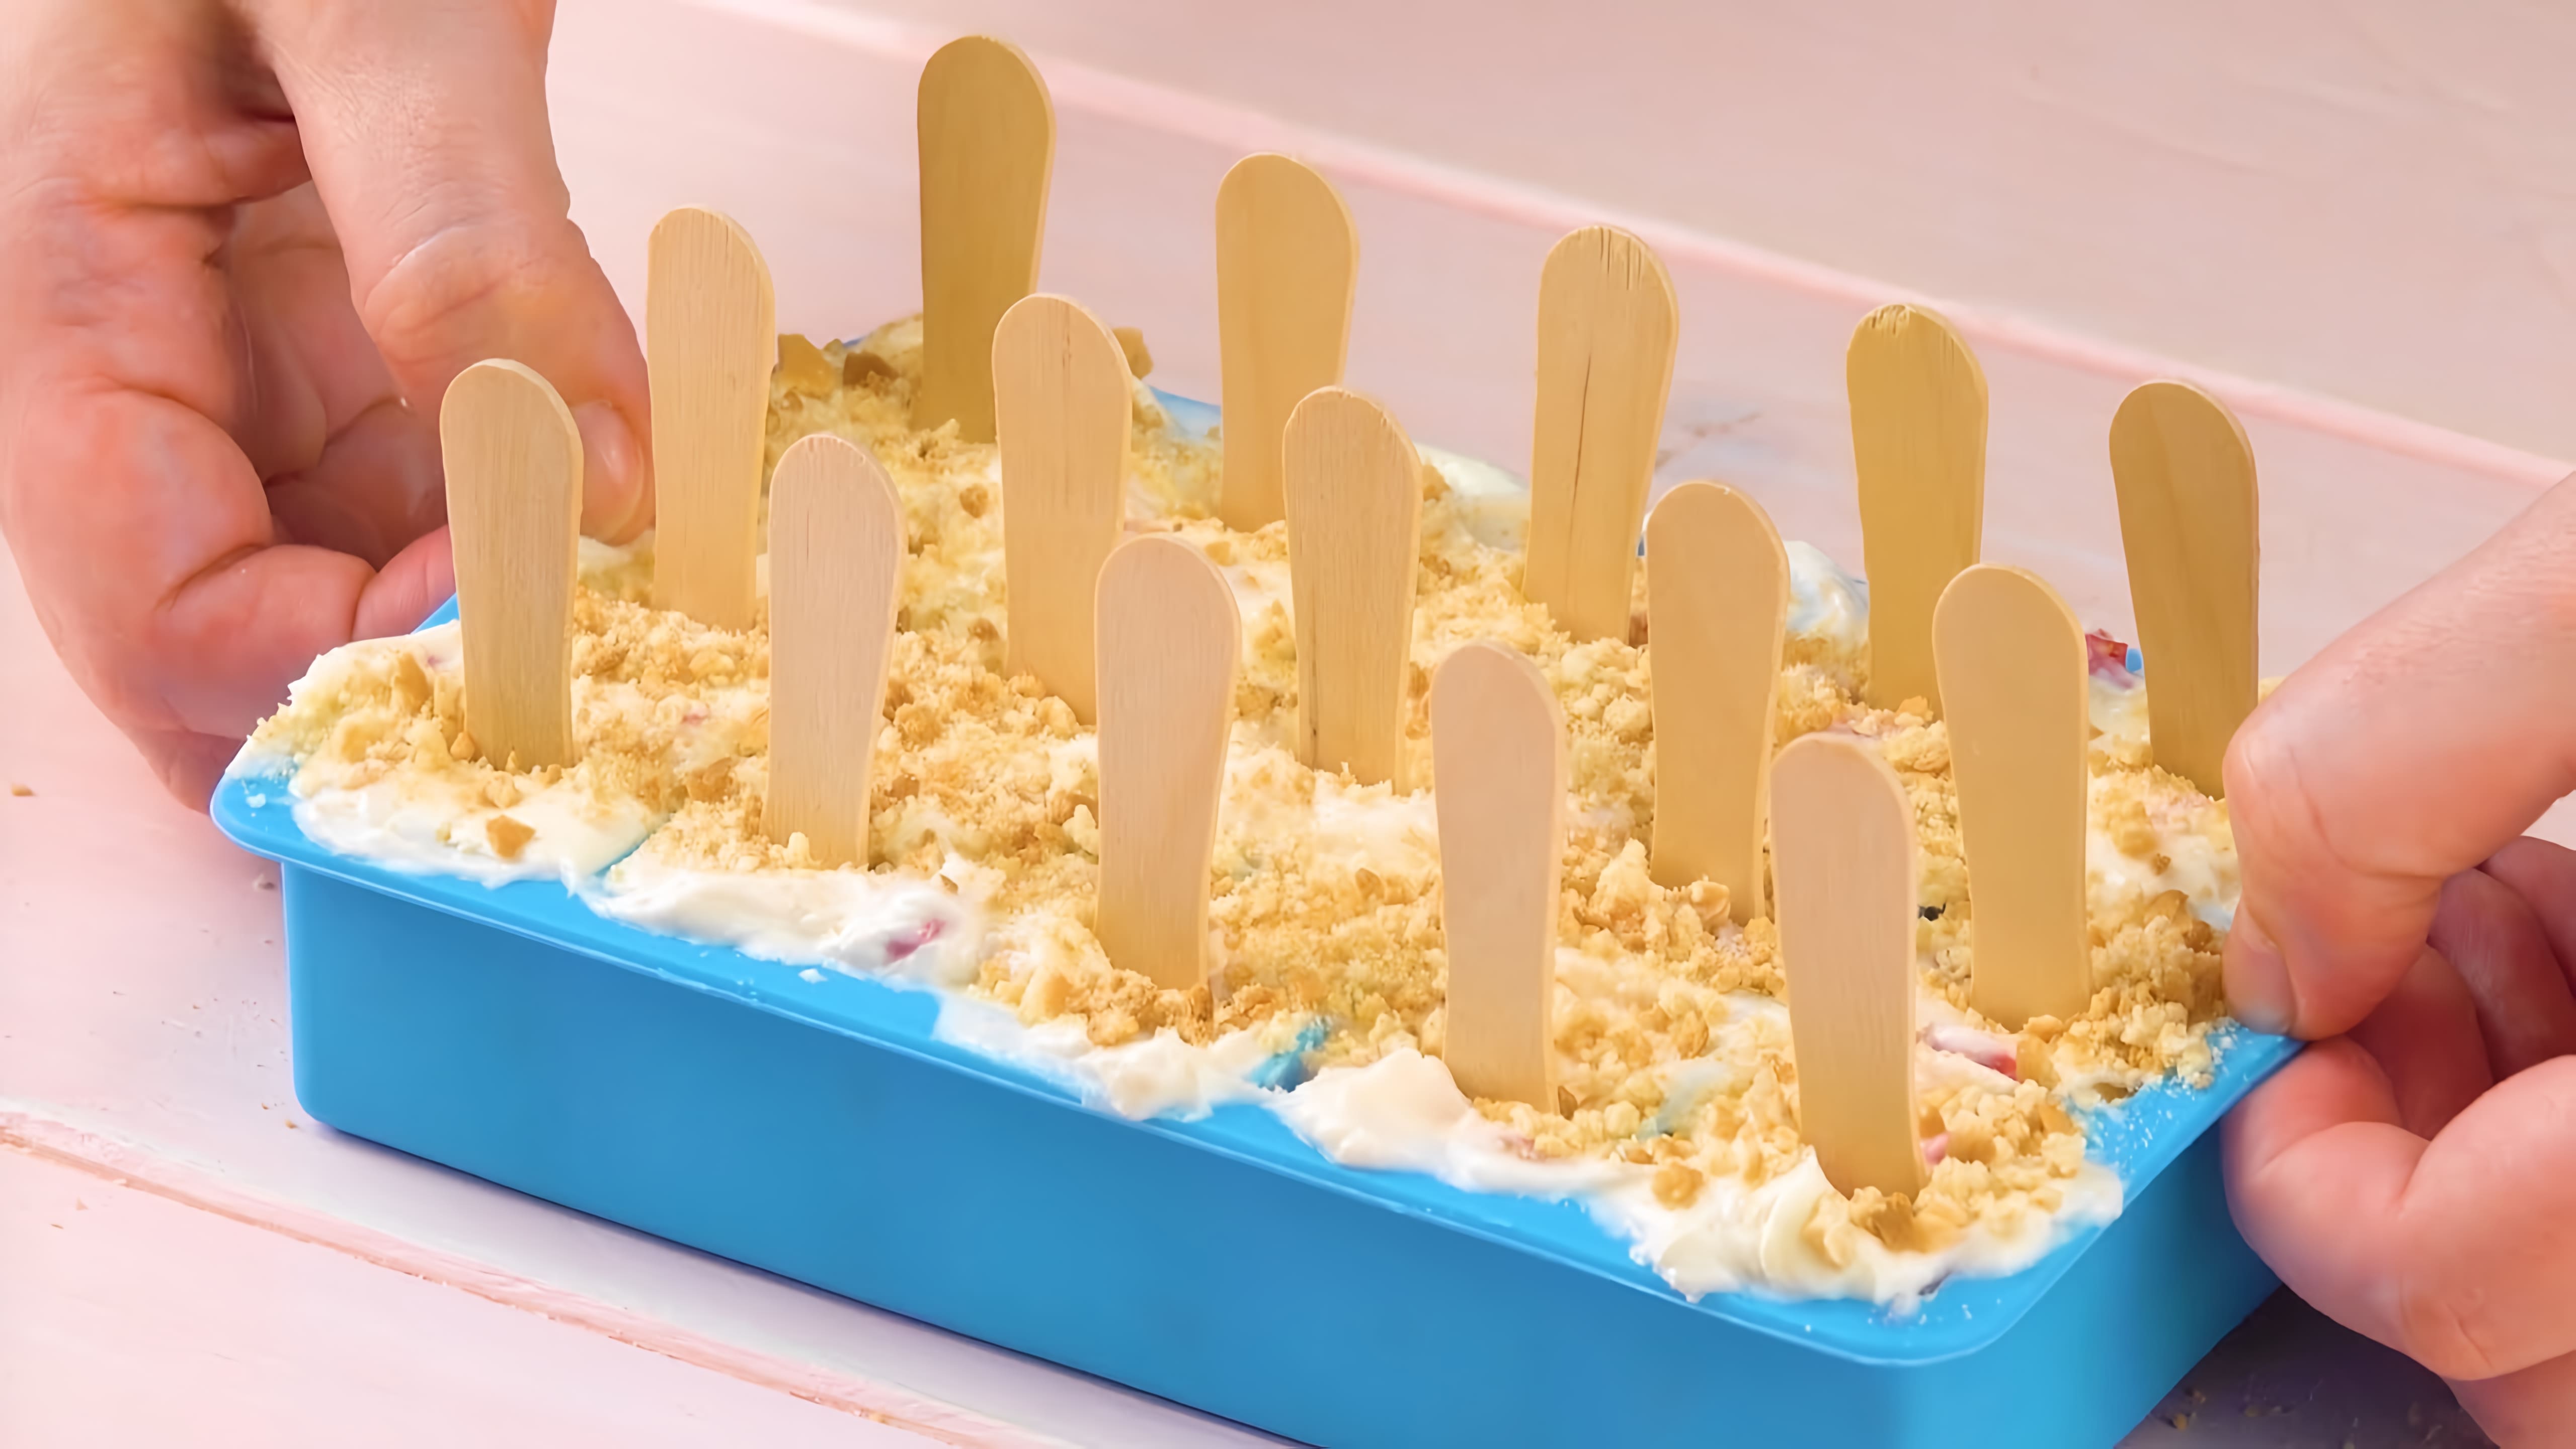 Видео: Готовим роскошные угощения с помощью морозилки. Супер-идеи!